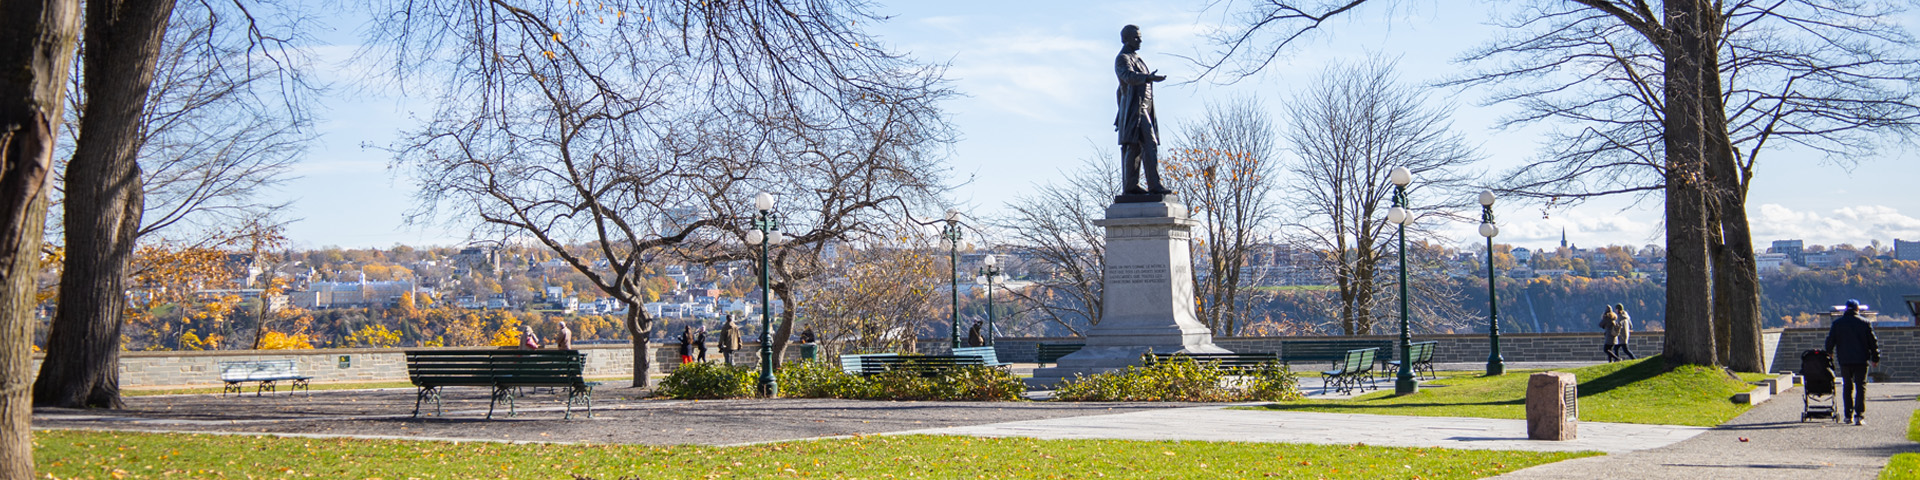 Parc montmorency à Québec avec statut de Sir George-Étienne Cartier